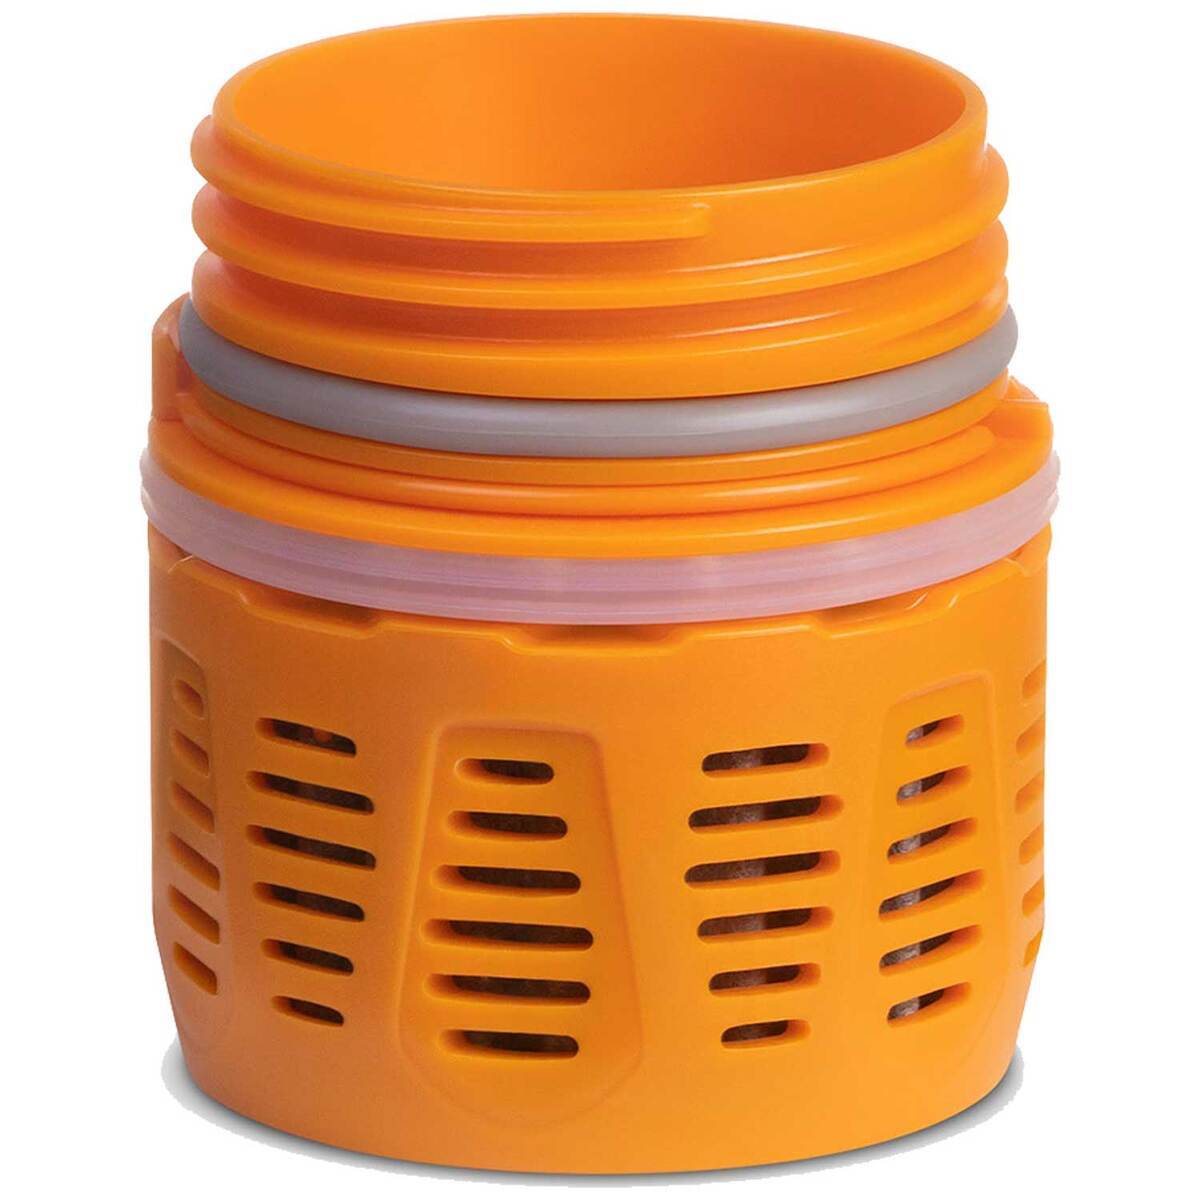 https://www.sportsmans.com/medias/grayl-ultrapress-replacement-purifier-cartridge-water-treatment-accessories-orange-1715912-1.jpg?context=bWFzdGVyfGltYWdlc3w3NzE4MHxpbWFnZS9qcGVnfGgzZS9oNmUvMTAzNjQwNTg5OTI2NzAvMTcxNTkxMi0xX2Jhc2UtY29udmVyc2lvbkZvcm1hdF8xMjAwLWNvbnZlcnNpb25Gb3JtYXR8MWQ1OWQyYjI4MDBiMTdmOWY1ODViMDA2ZGQxMTEyZDIxNTBkYThhMjI2MmE1MmMxZTI3MWU2M2VkZmUxNTg3Mg